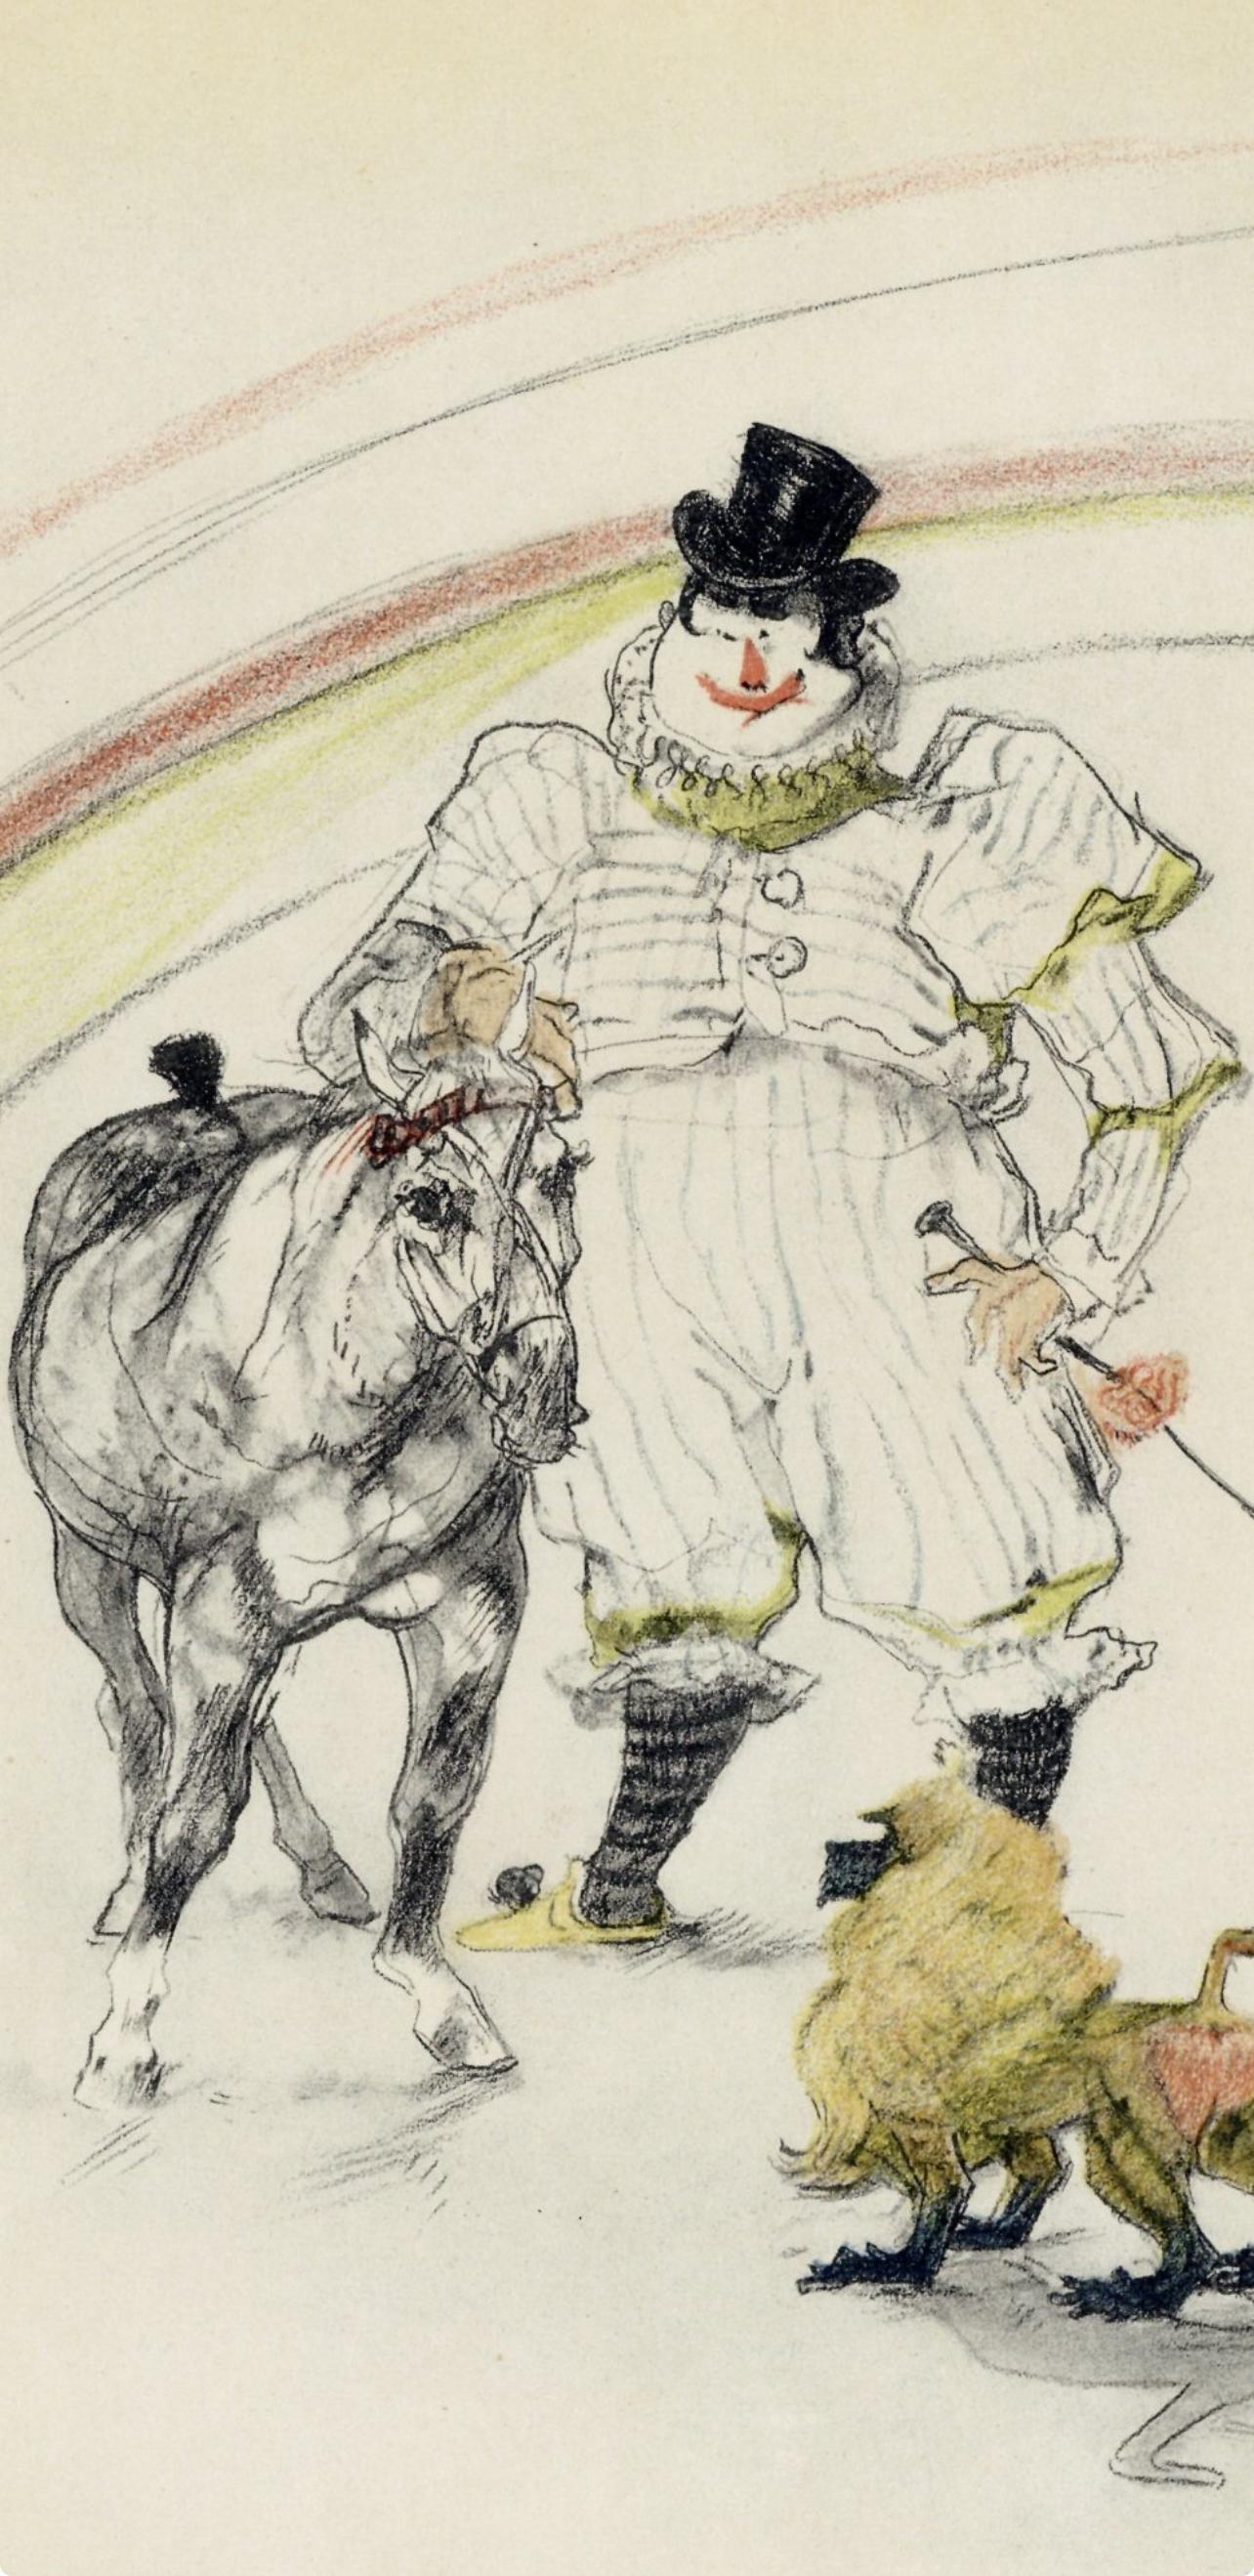 Toulouse-Lautrec, Cheval et Singe dressé, The Circus by Toulouse-Lautrec (after) - Print by Henri de Toulouse-Lautrec